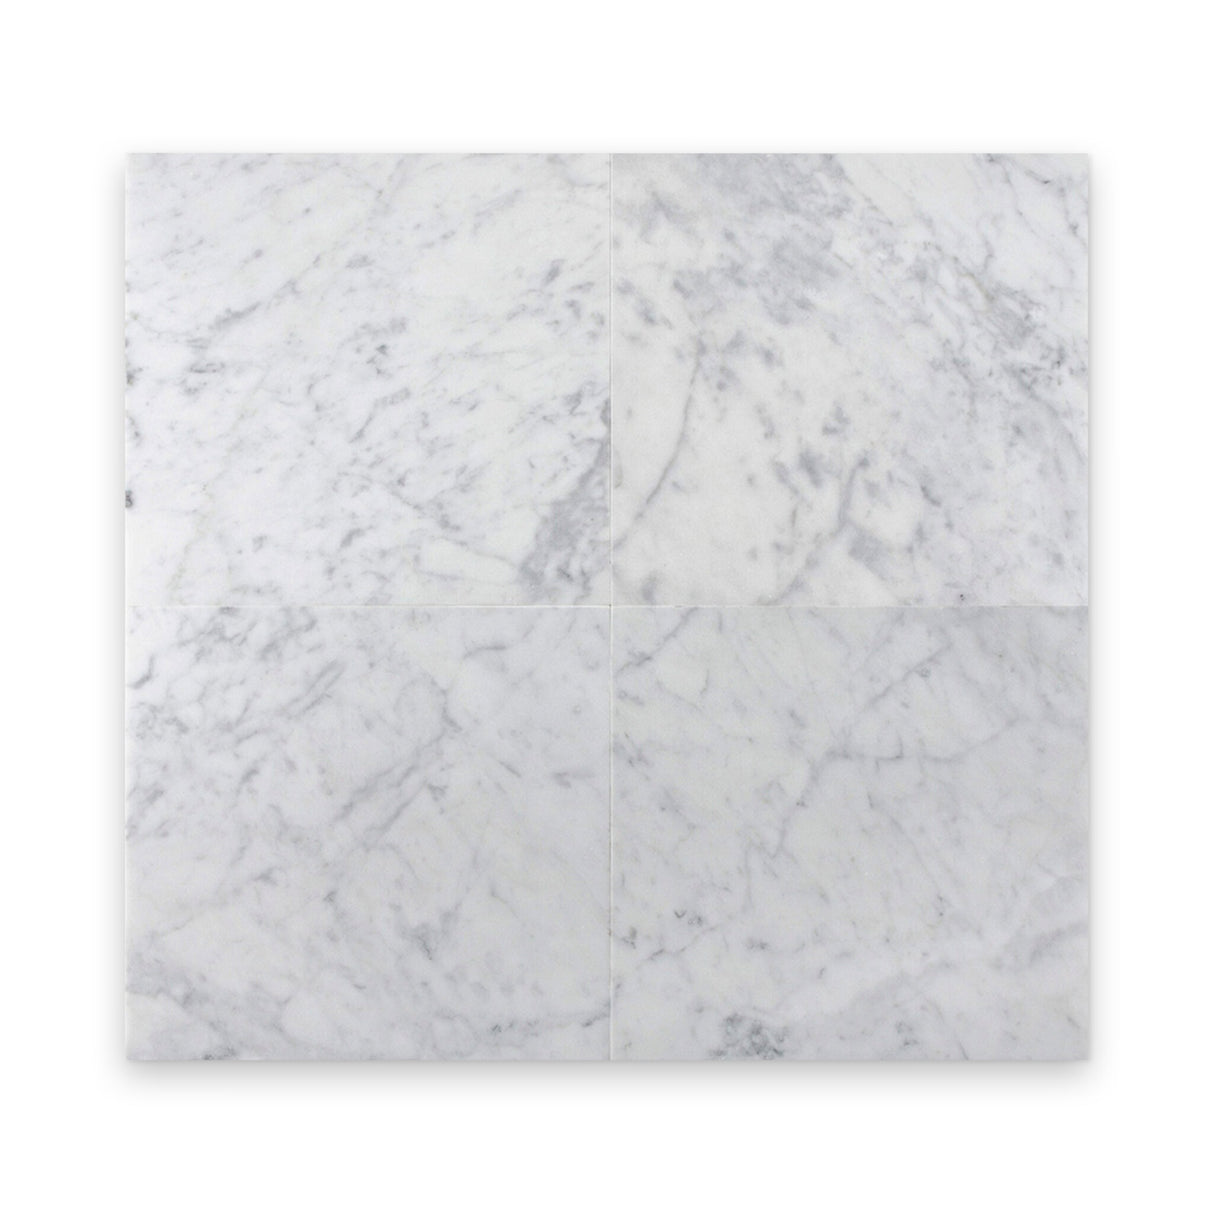 12x12 Carrara White Honed Square Tile